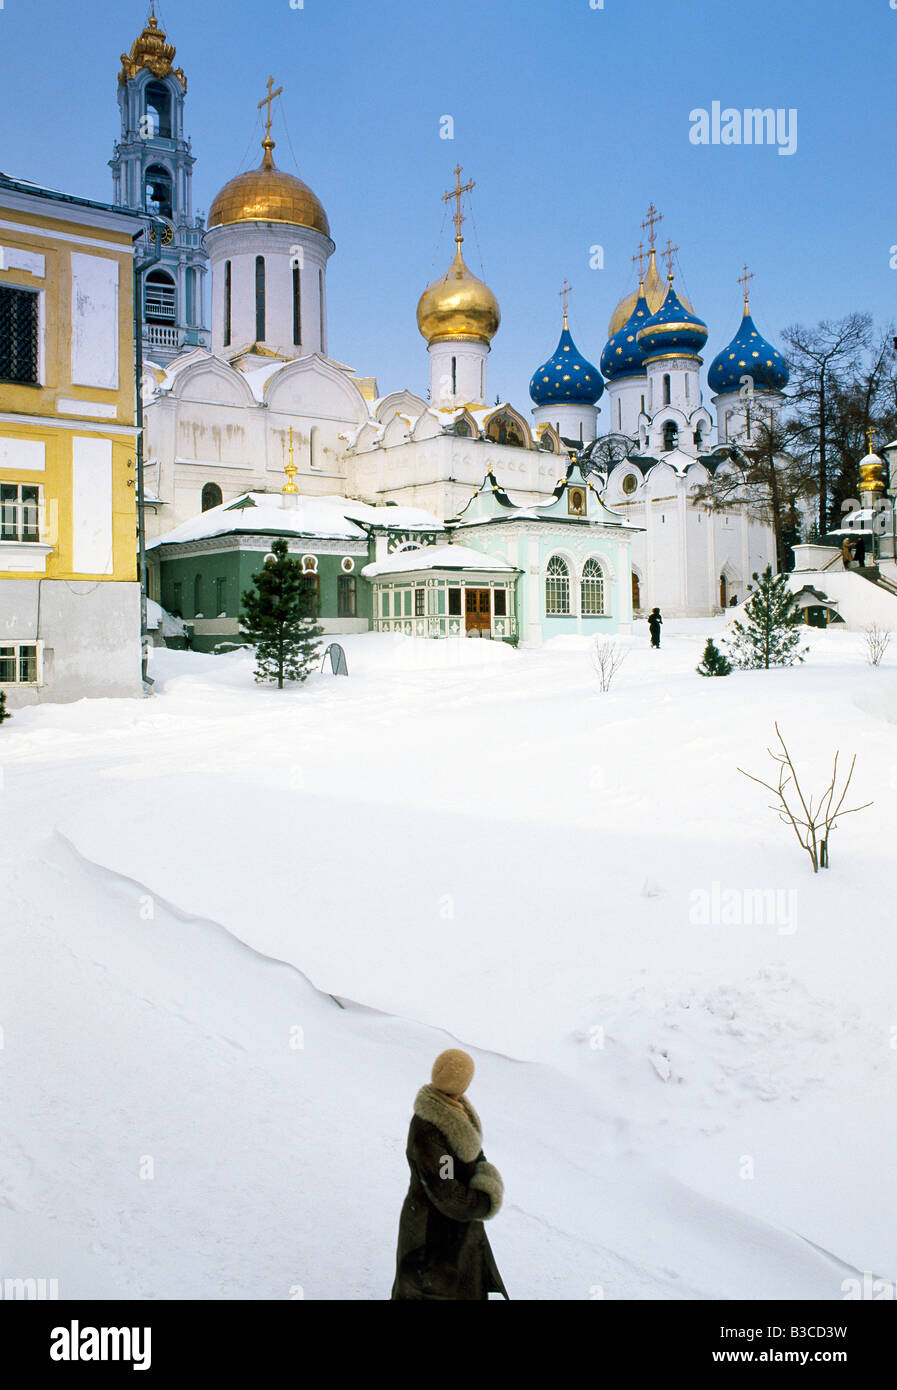 Monastère de la Trinité-Serge Chrétien Cathédrale de l'Assomption dans la neige de l'hiver, Serguiev Posad, région de Moscou, Russie Banque D'Images